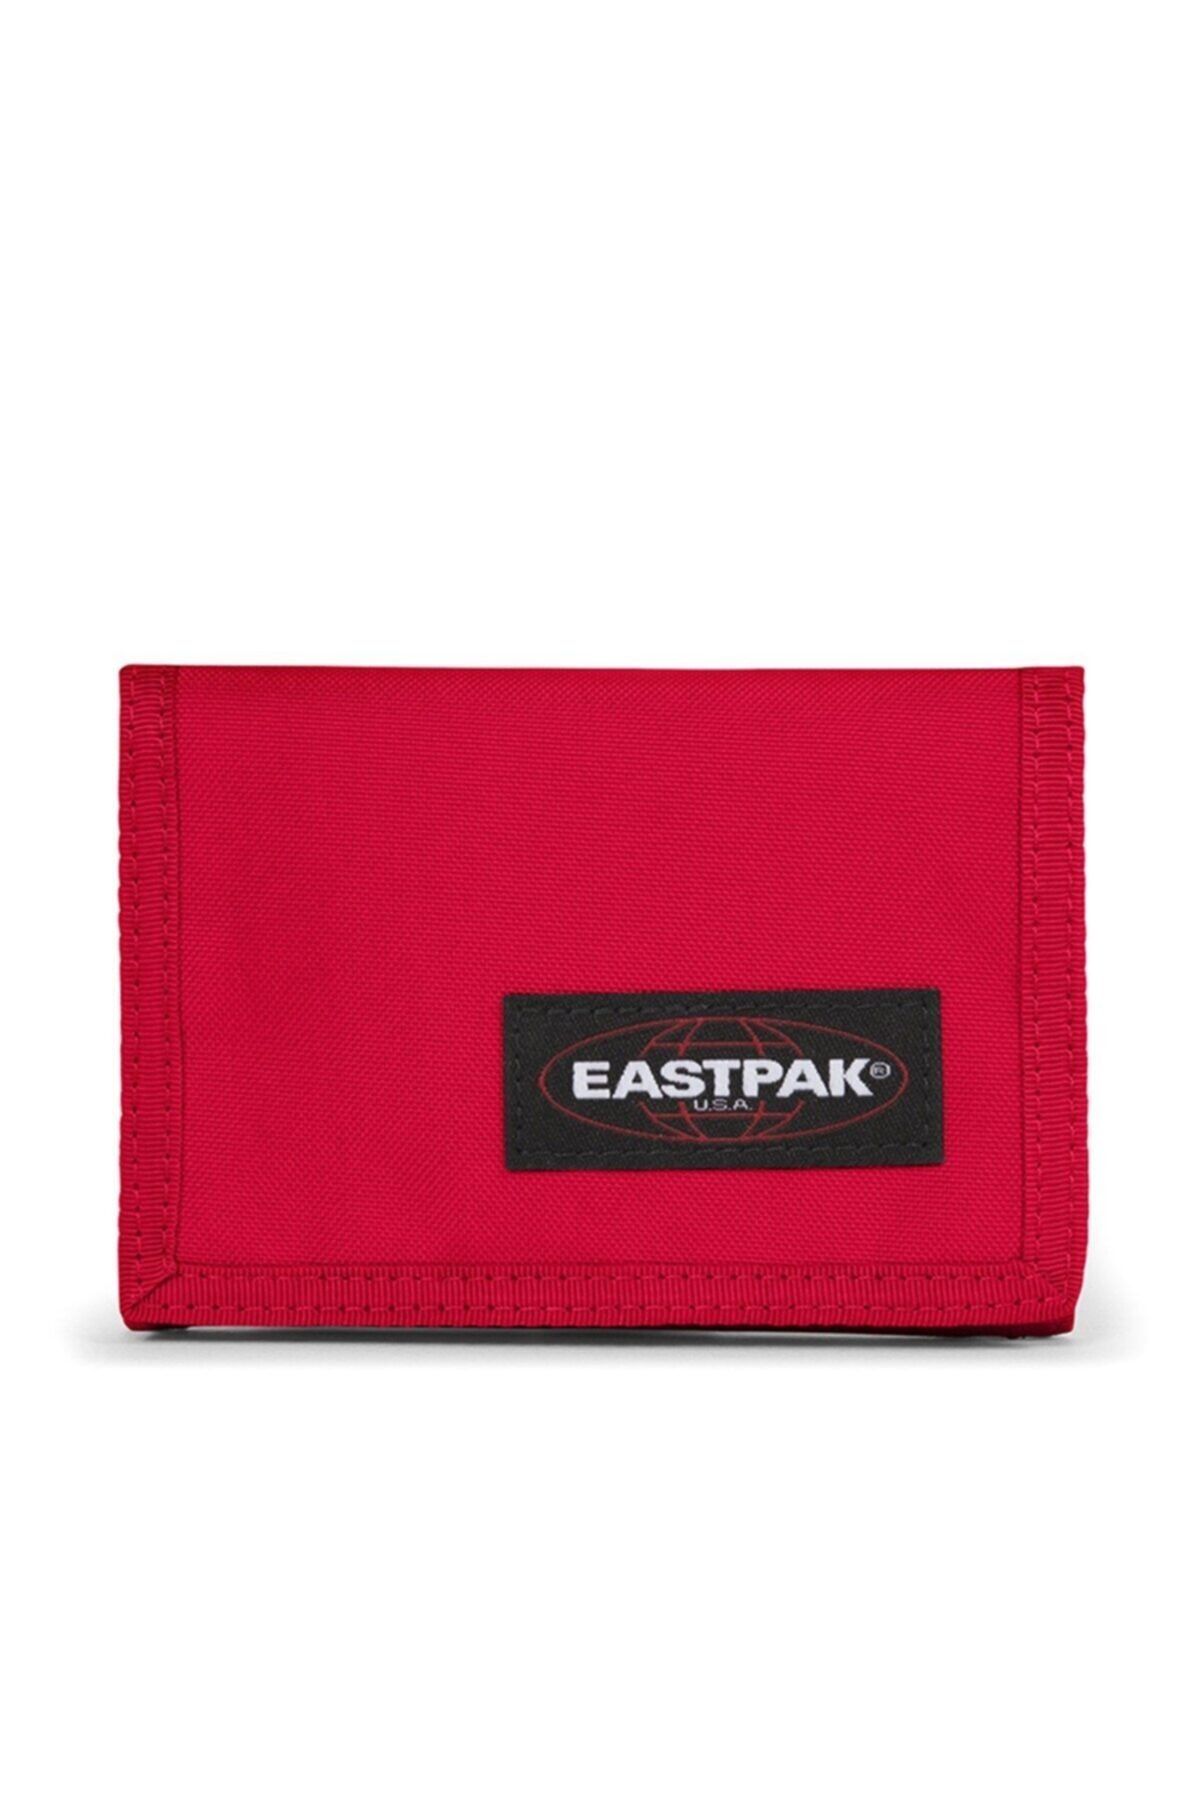 Eastpak CREW SINGLE Kırmızı Unisex Spor Cüzdan 101086399